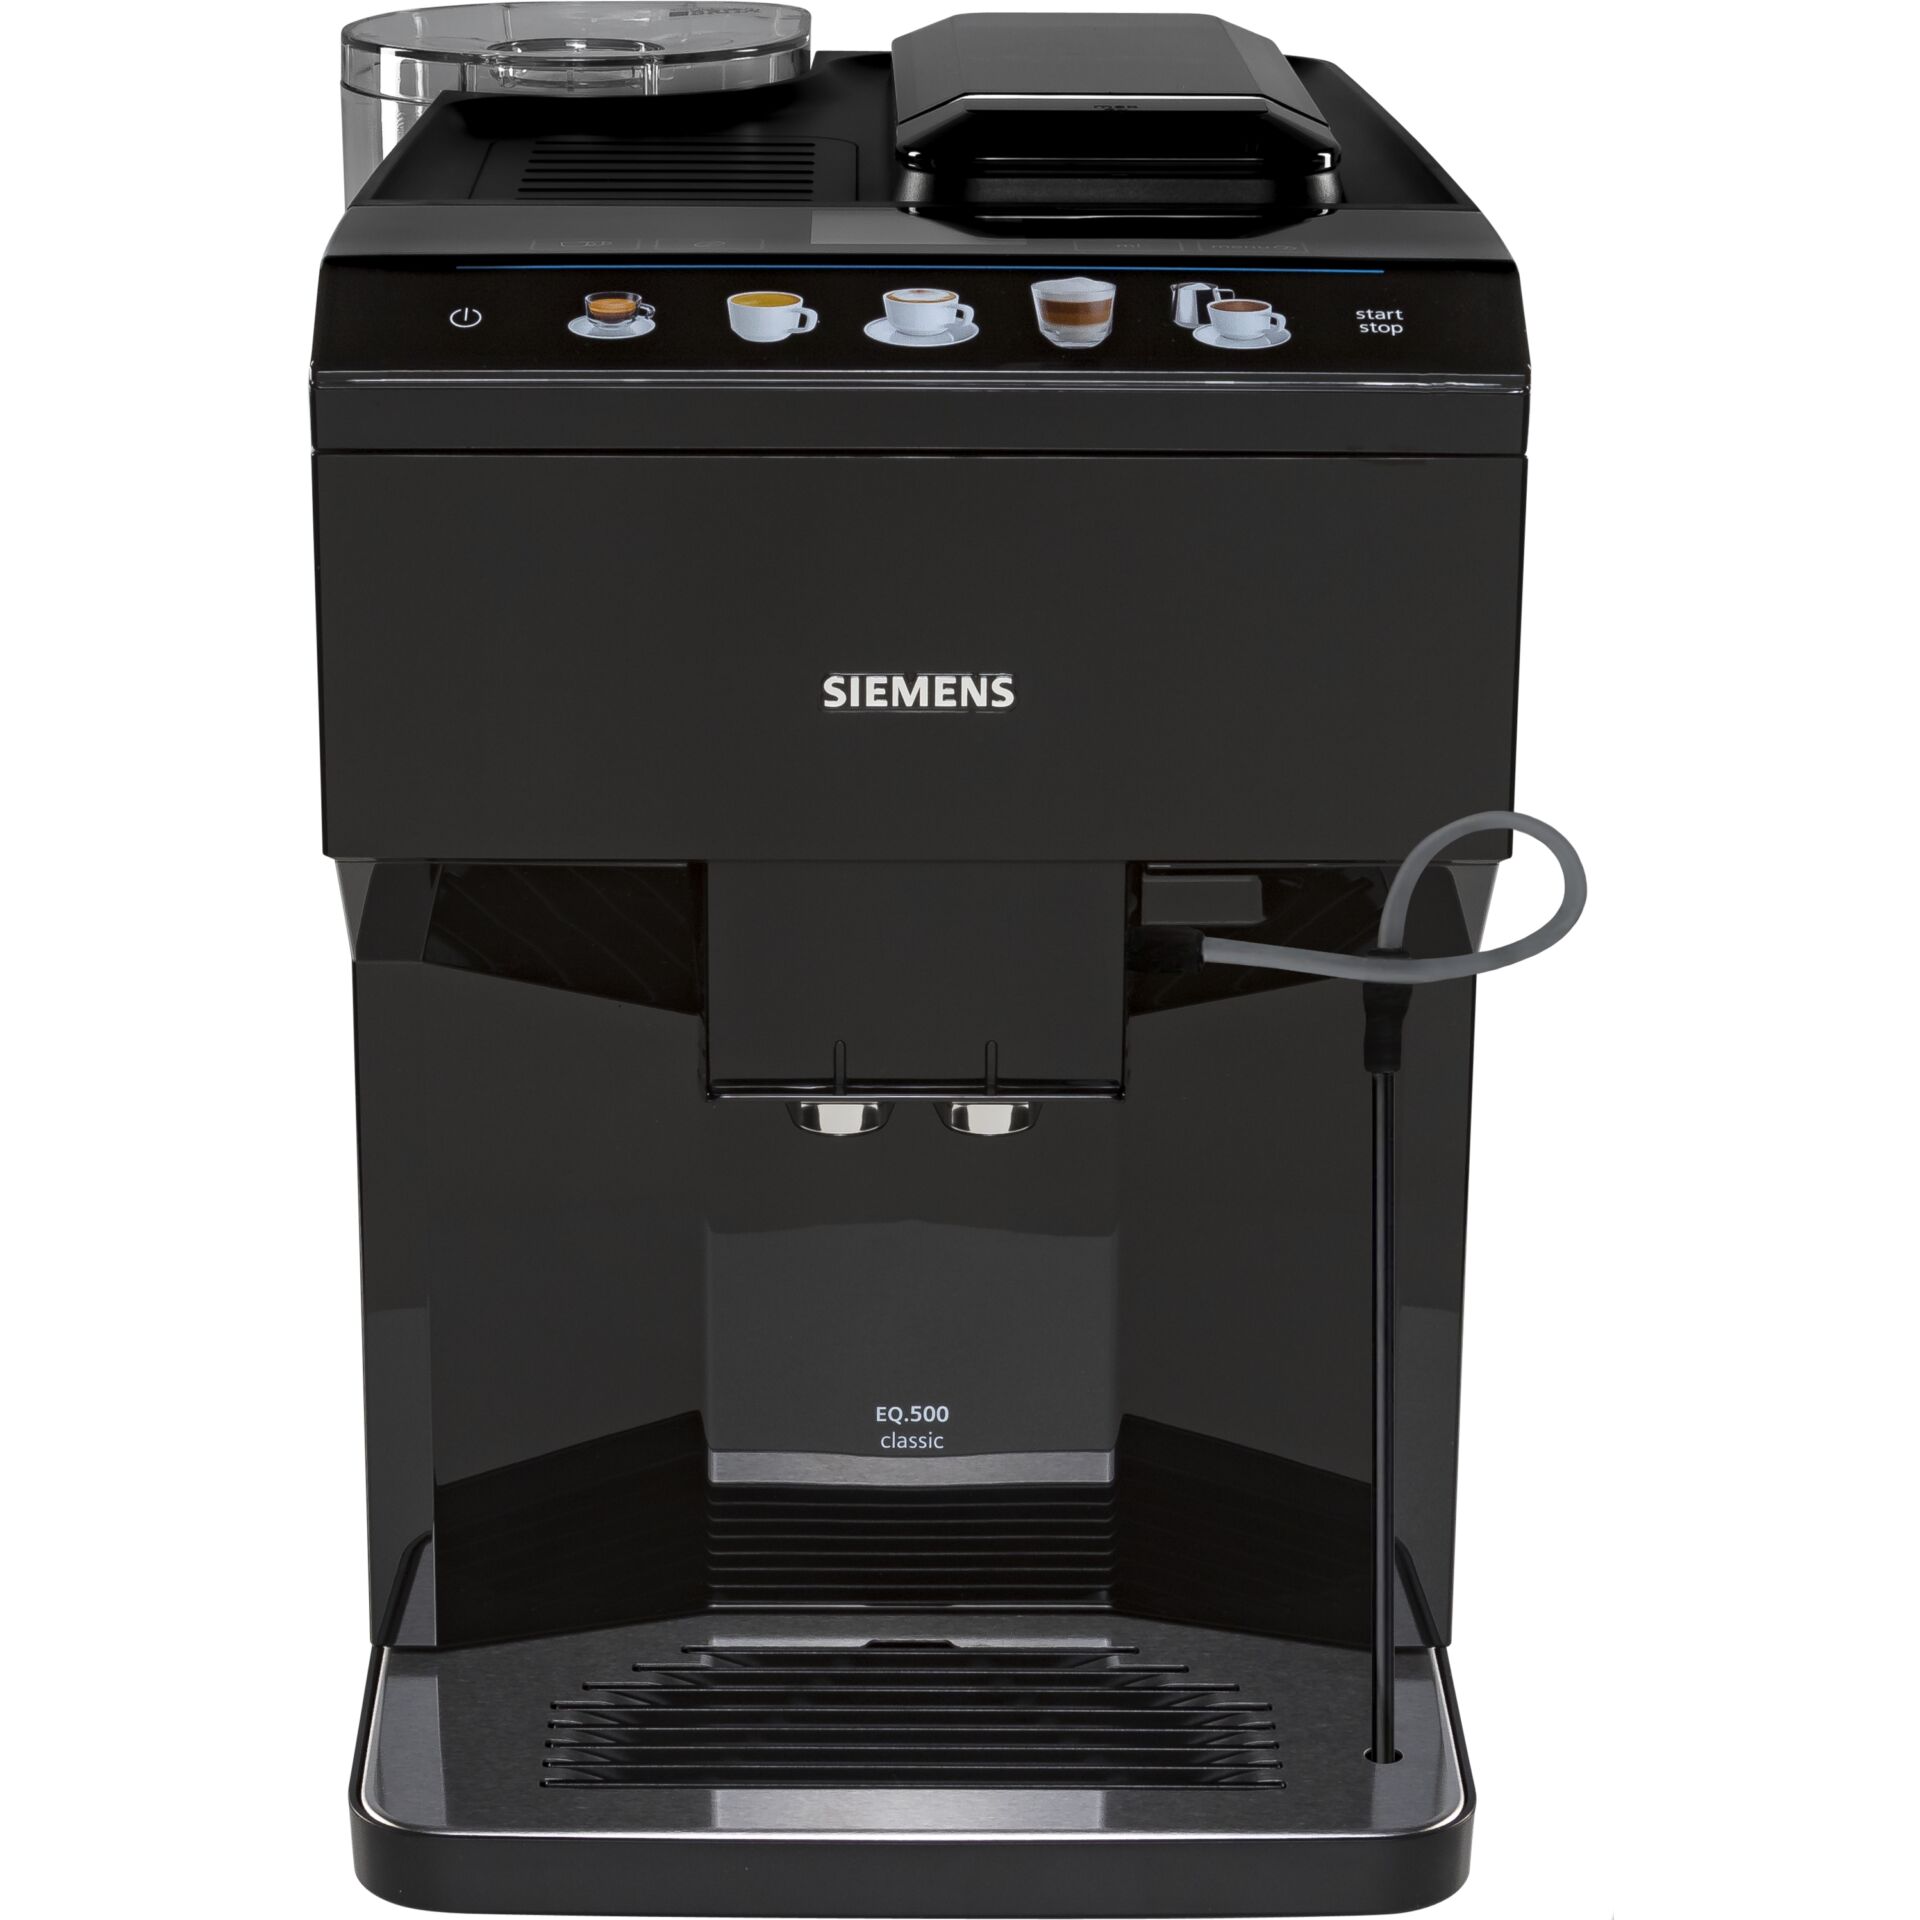 Siemens EQ.500 classic TP501R09, vollautomatische Kaffeemaschine